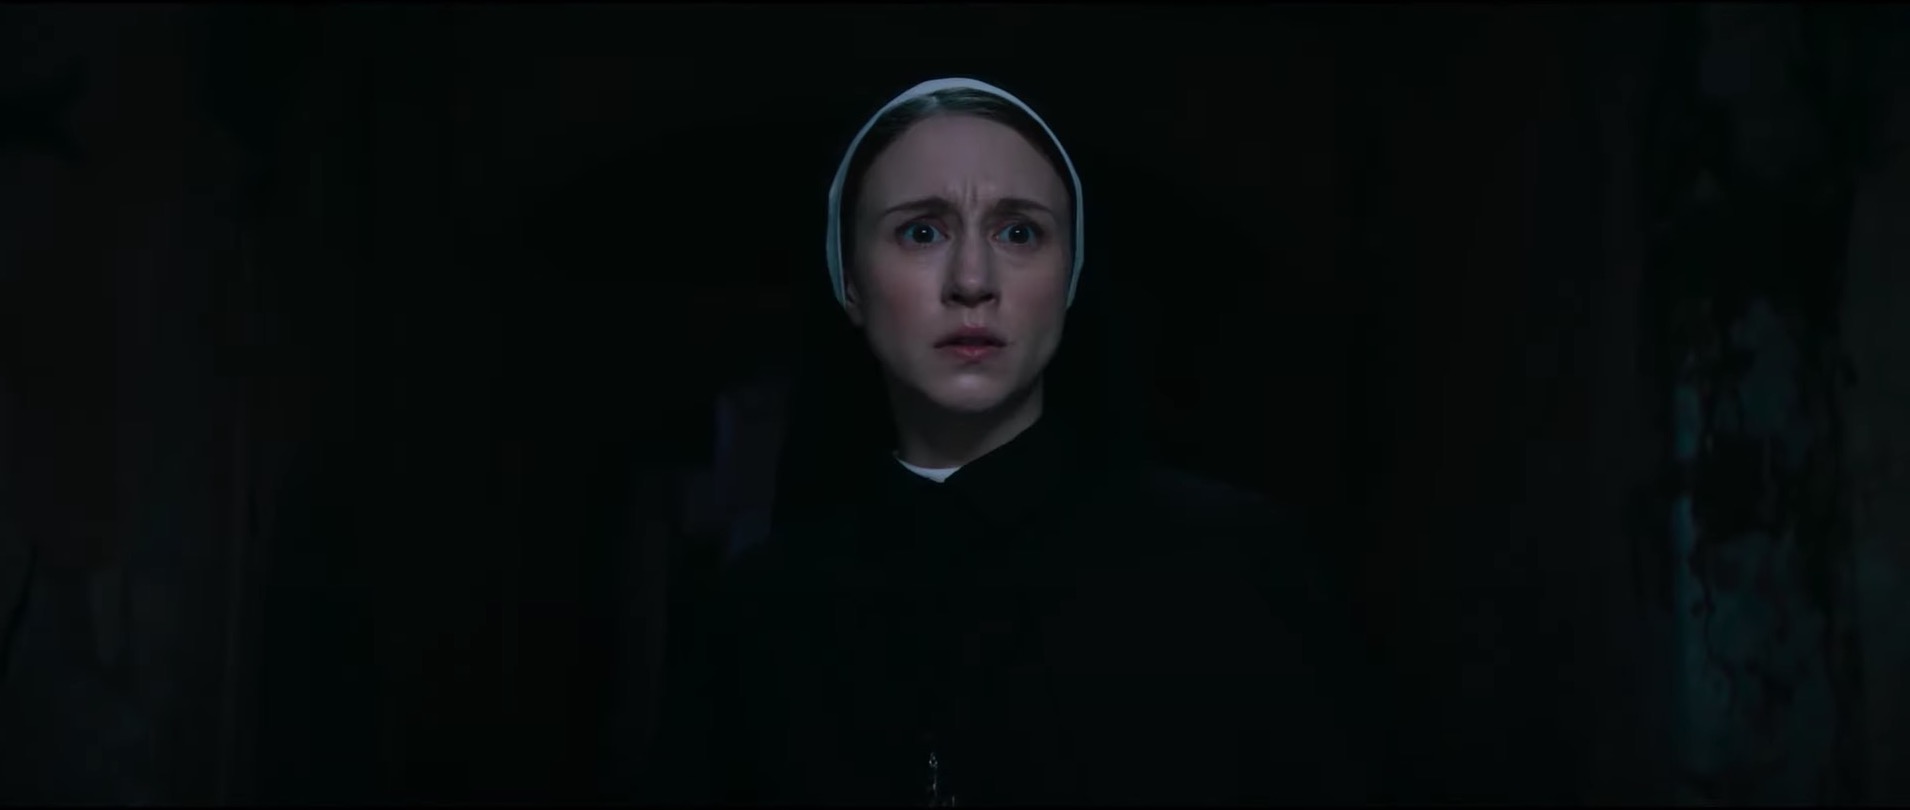 La nonne : la malédiction de sainte lucie. Cinéma 